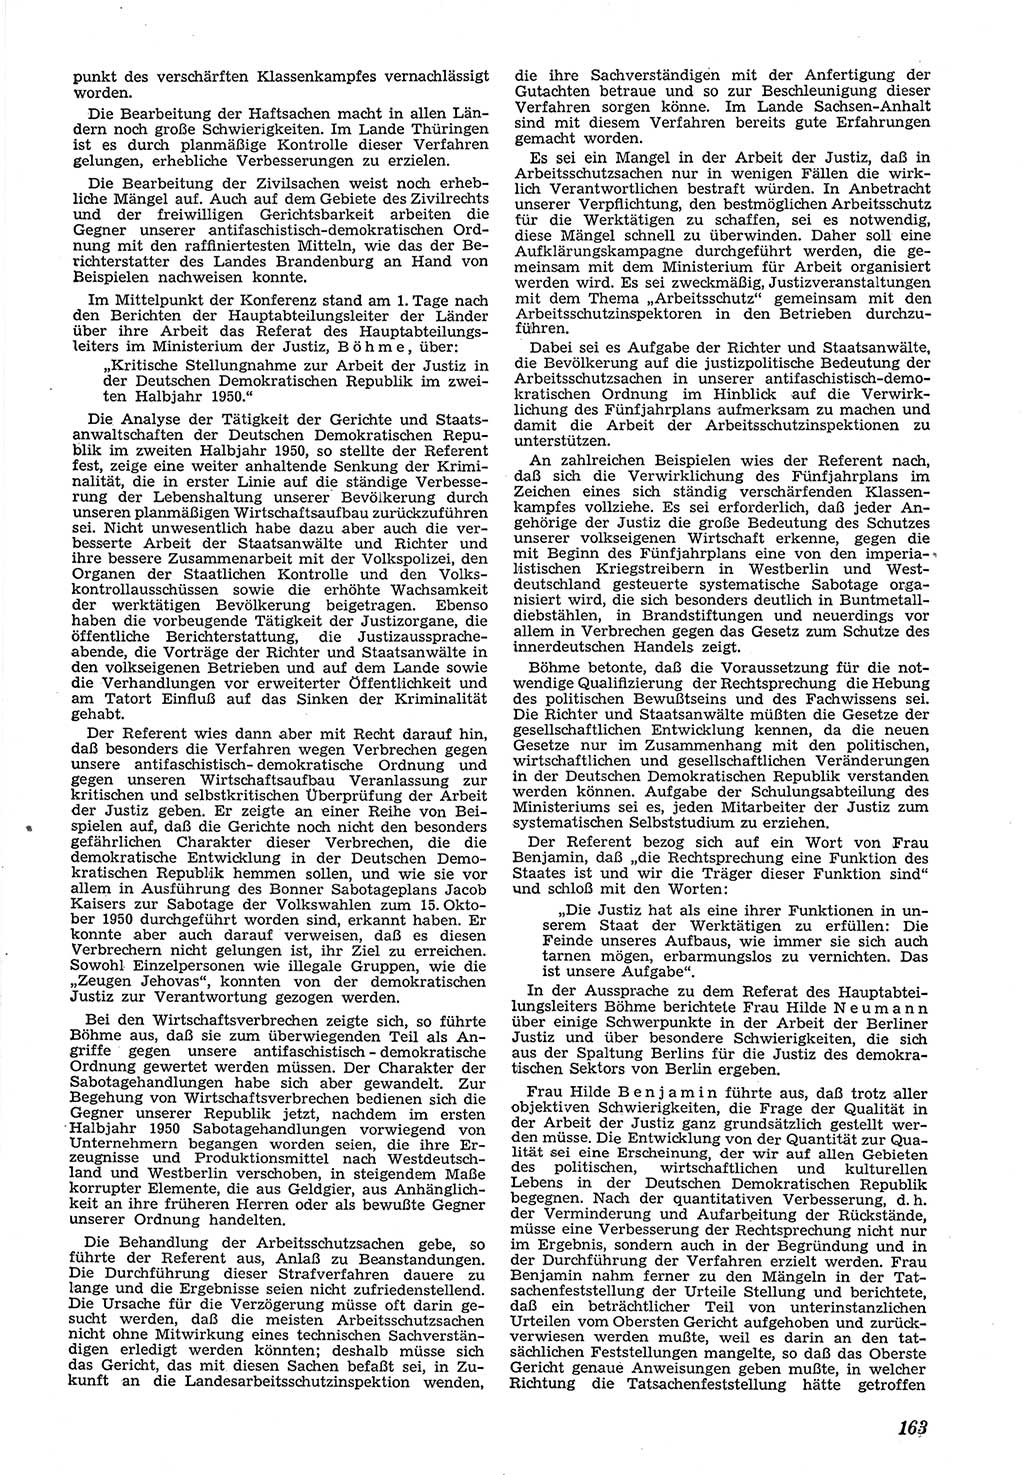 Neue Justiz (NJ), Zeitschrift für Recht und Rechtswissenschaft [Deutsche Demokratische Republik (DDR)], 5. Jahrgang 1951, Seite 163 (NJ DDR 1951, S. 163)